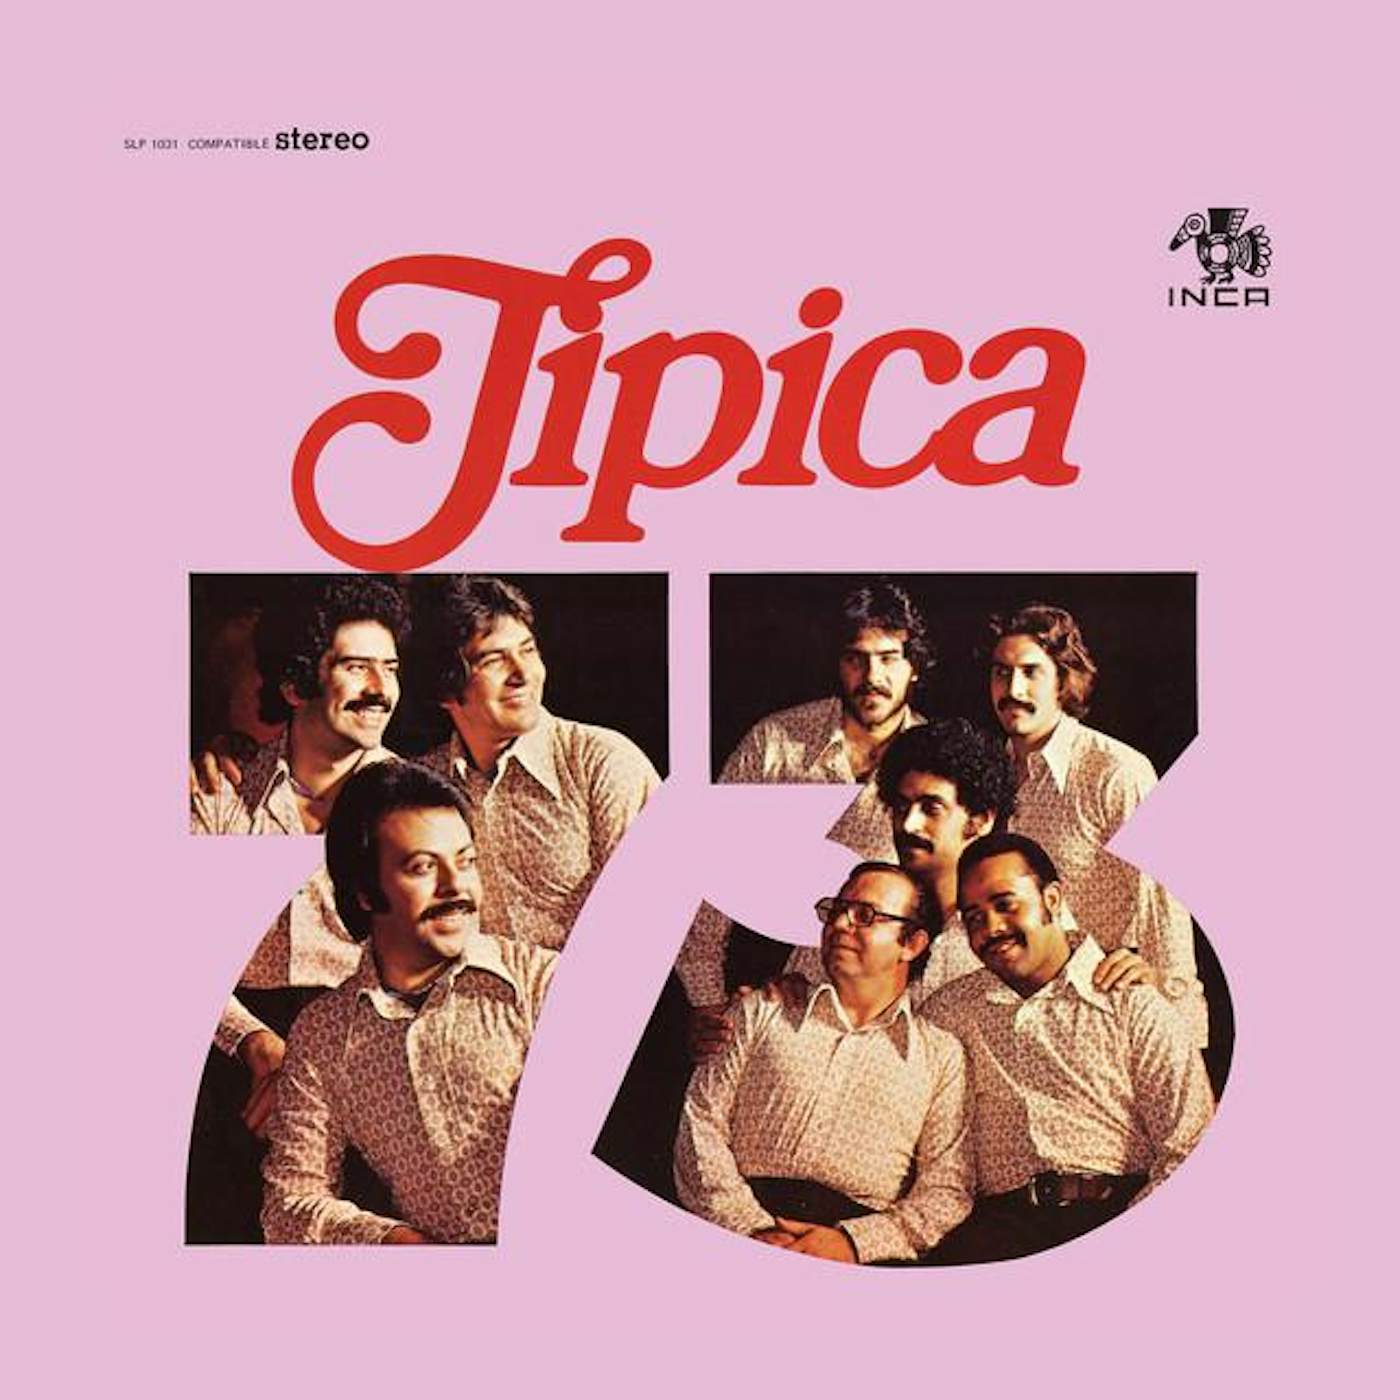 Tipica 73